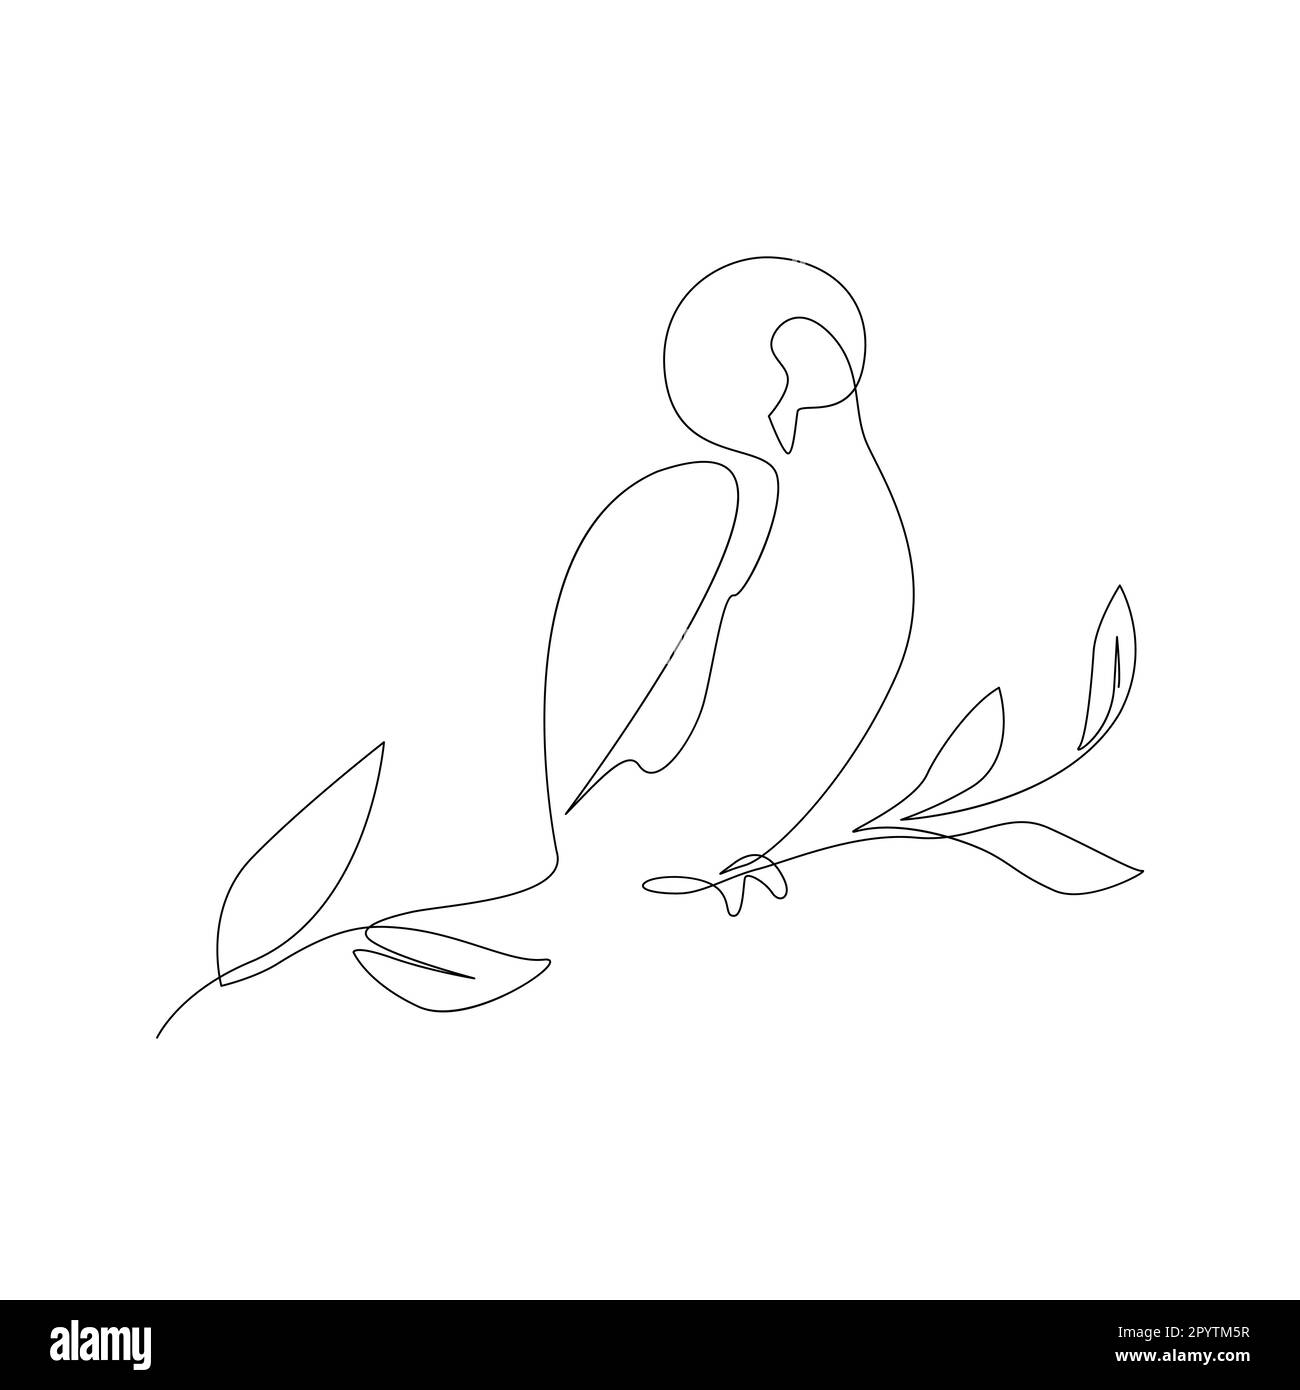 Schönheitsvogel sitzt auf einem Ast. Kosmetik, Öko-Produktionslogo, Continuous Line Art modernes abstraktes Etikettendesign Stock Vektor